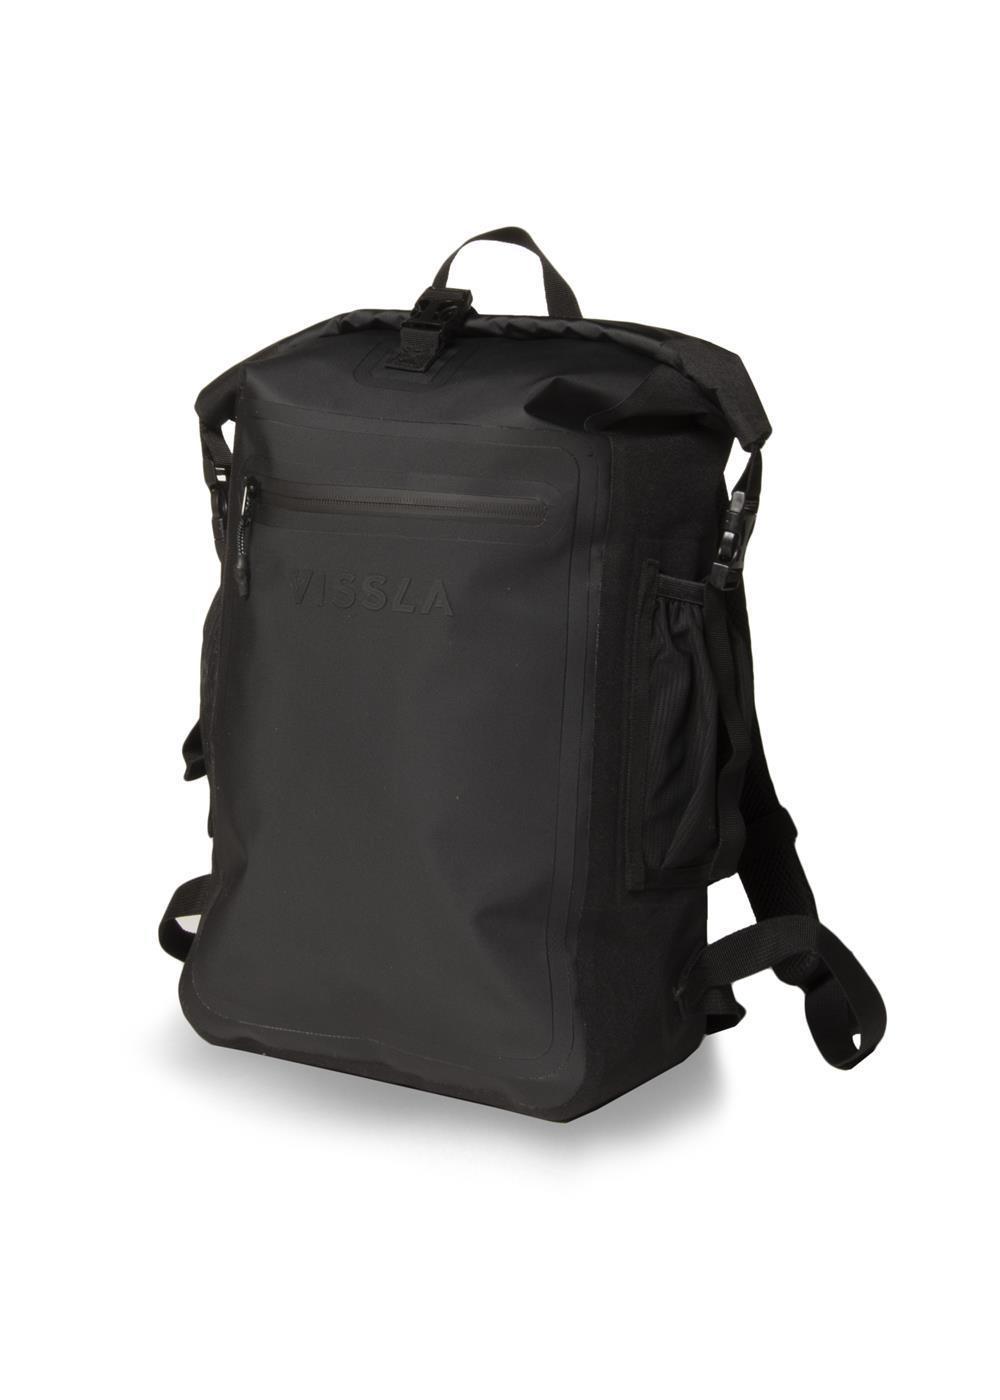 Vissla Black 18 liter Dry Backpack